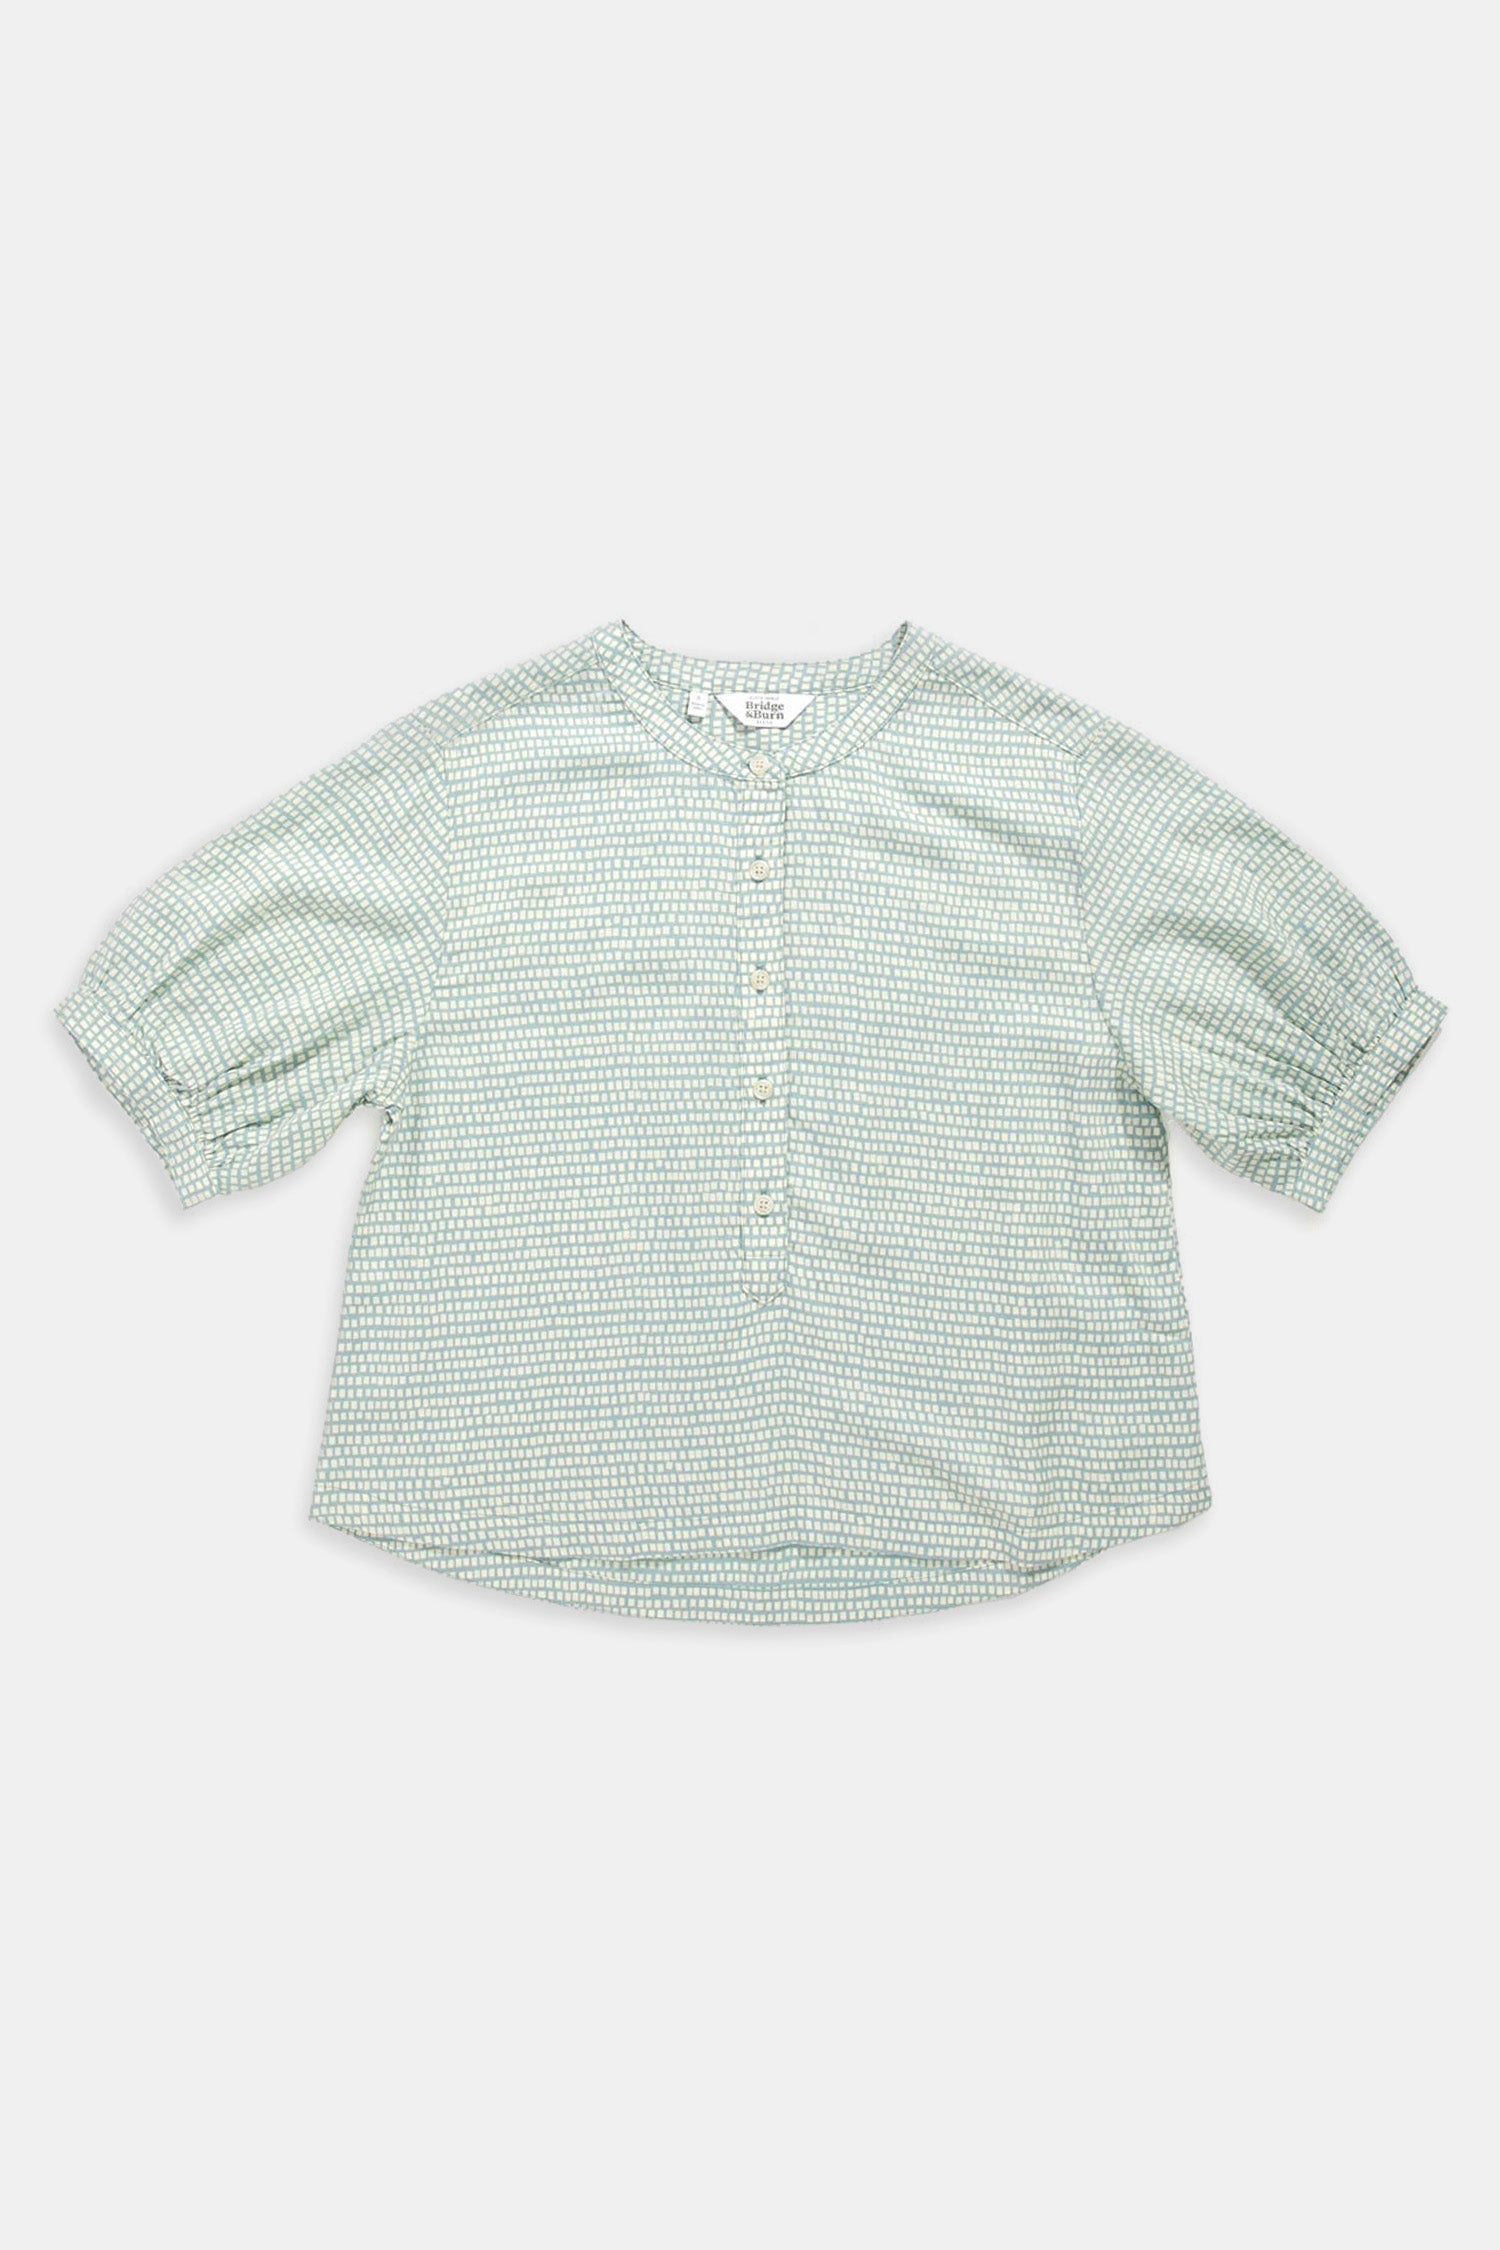 Drew Shirt / Aqua Tiles